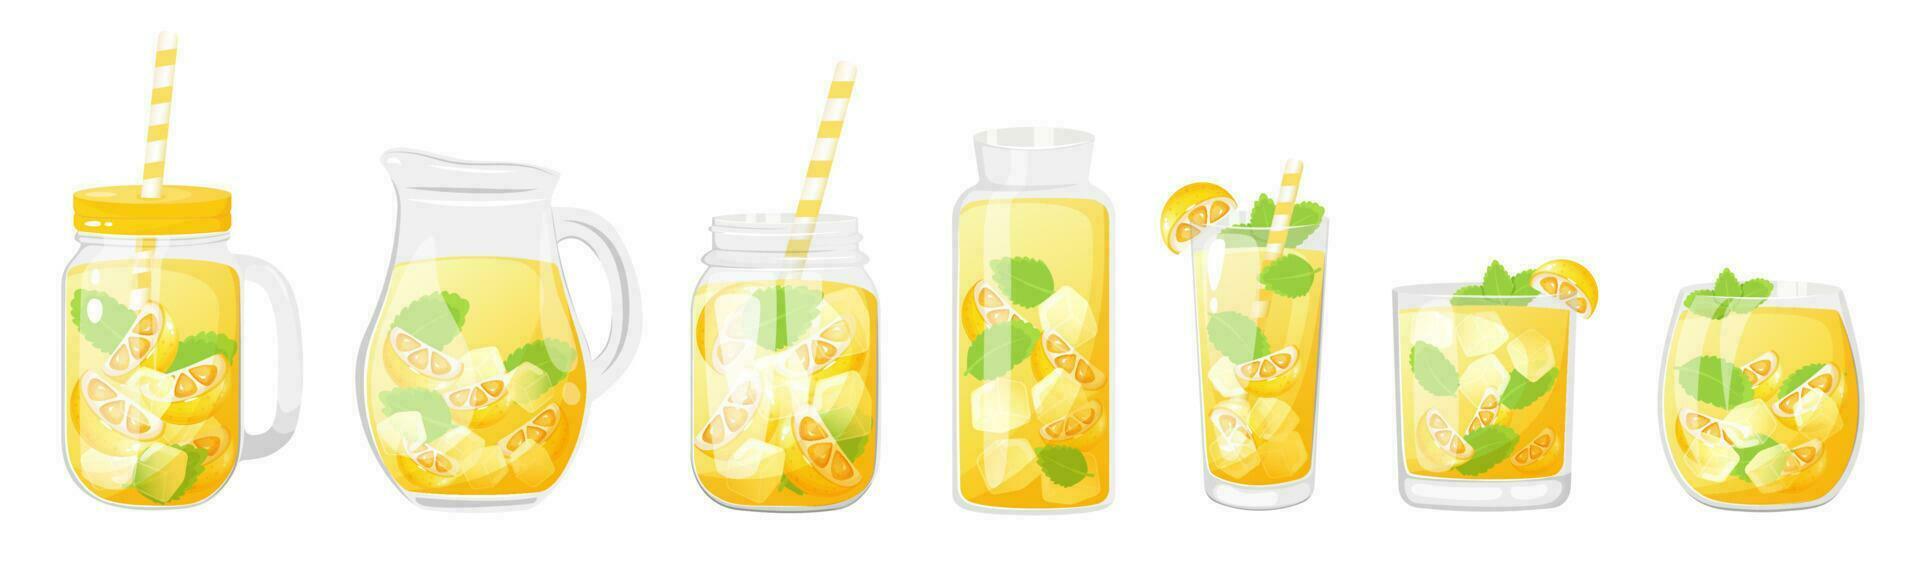 limonada dentro diferente vidro recipiente. verão suave bebidas com limão e hortelã. vetor